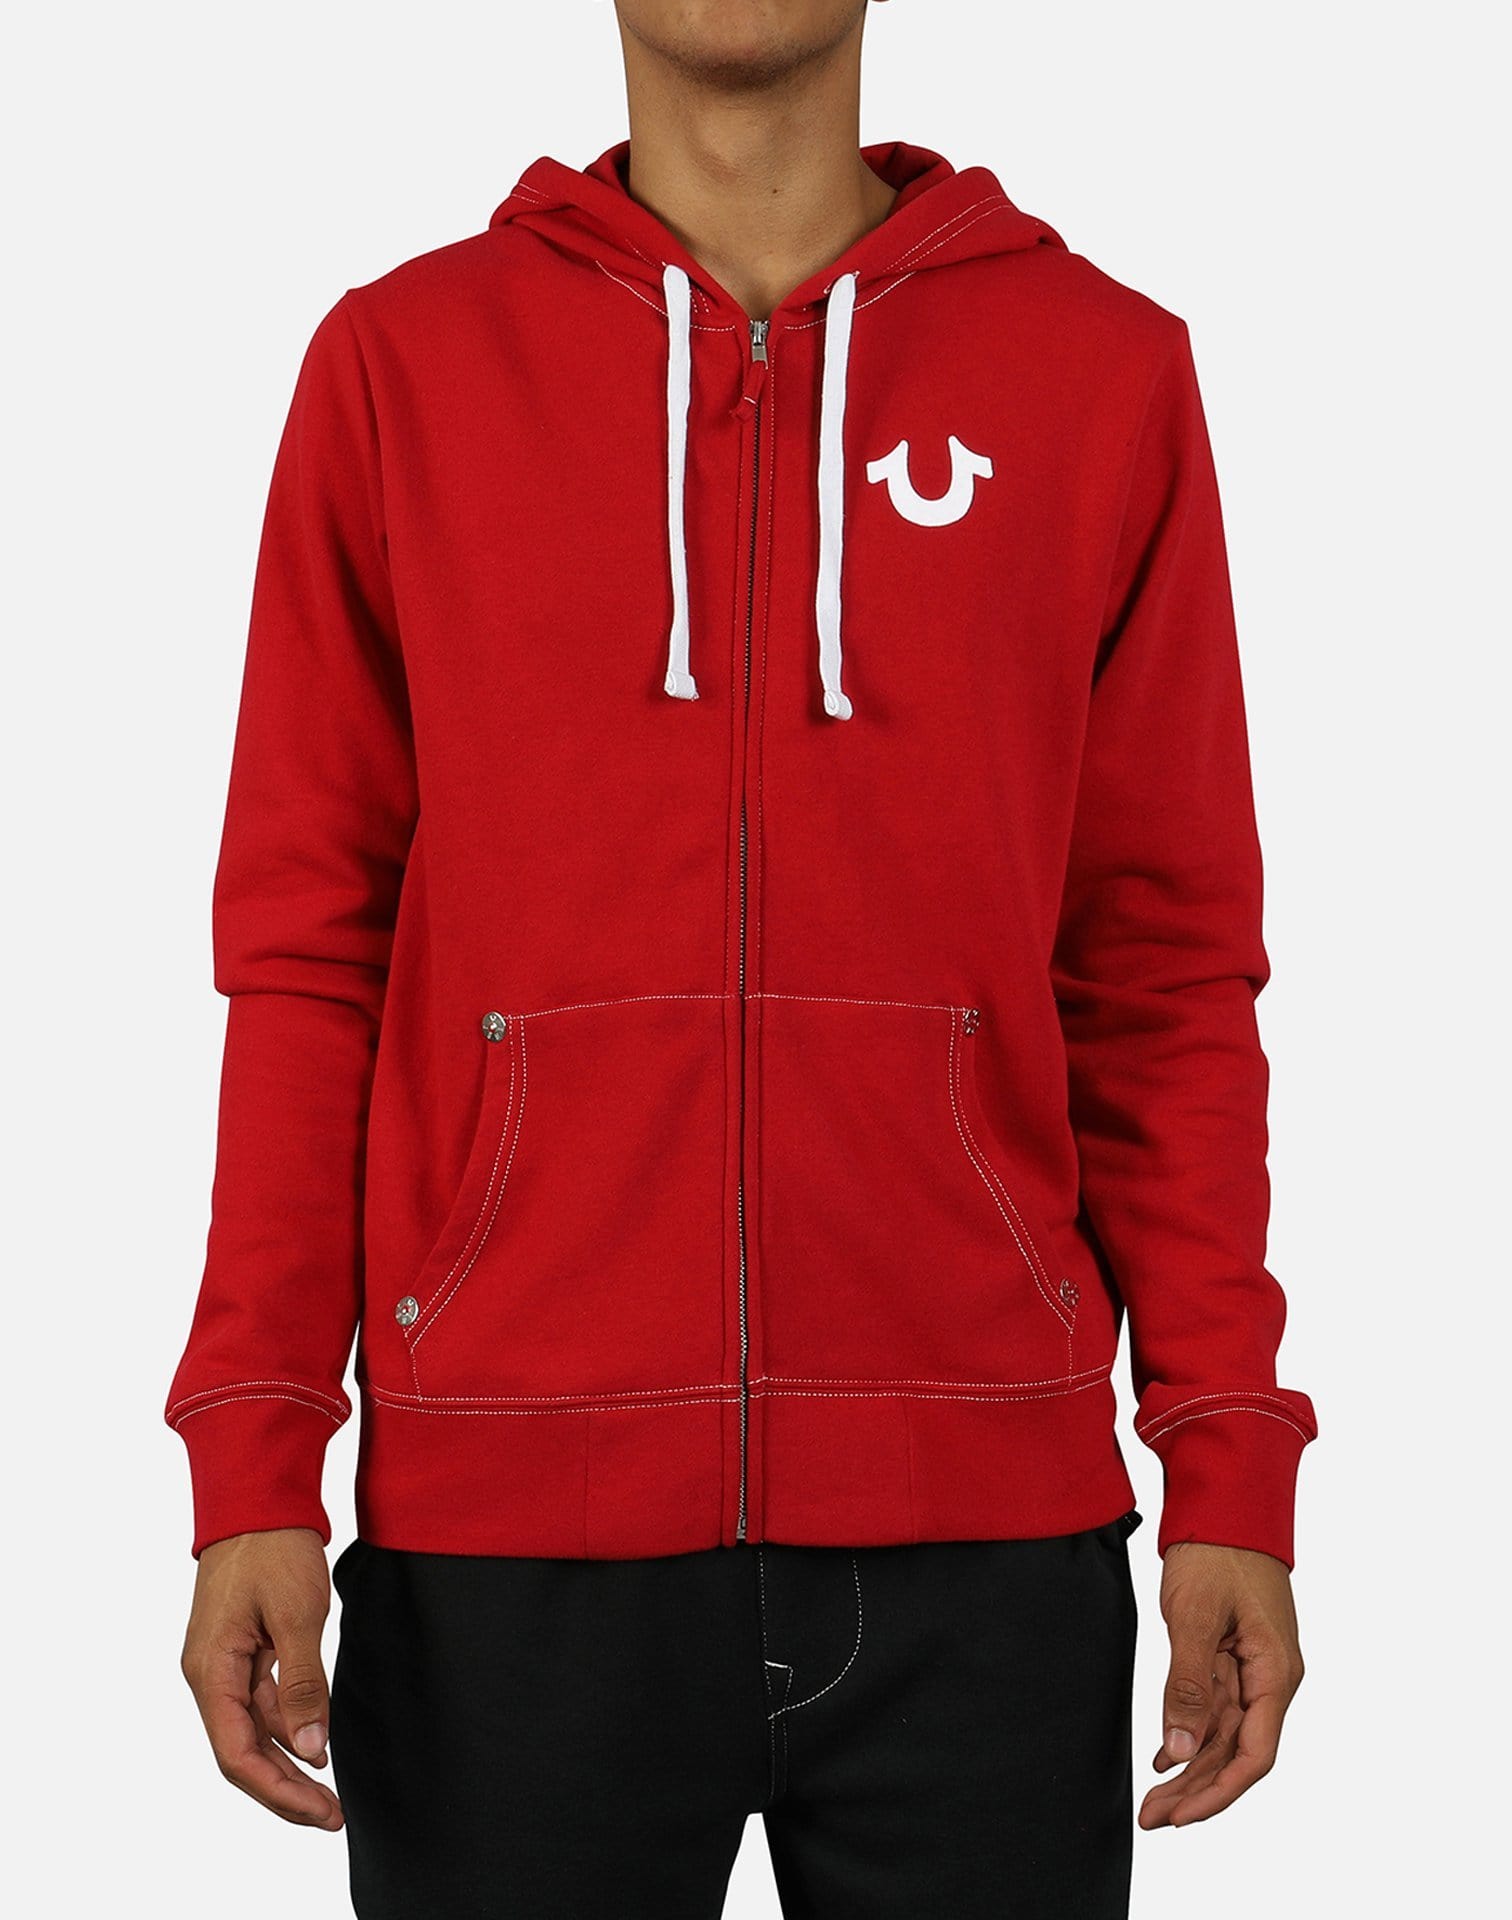 red true religion hoodie women's